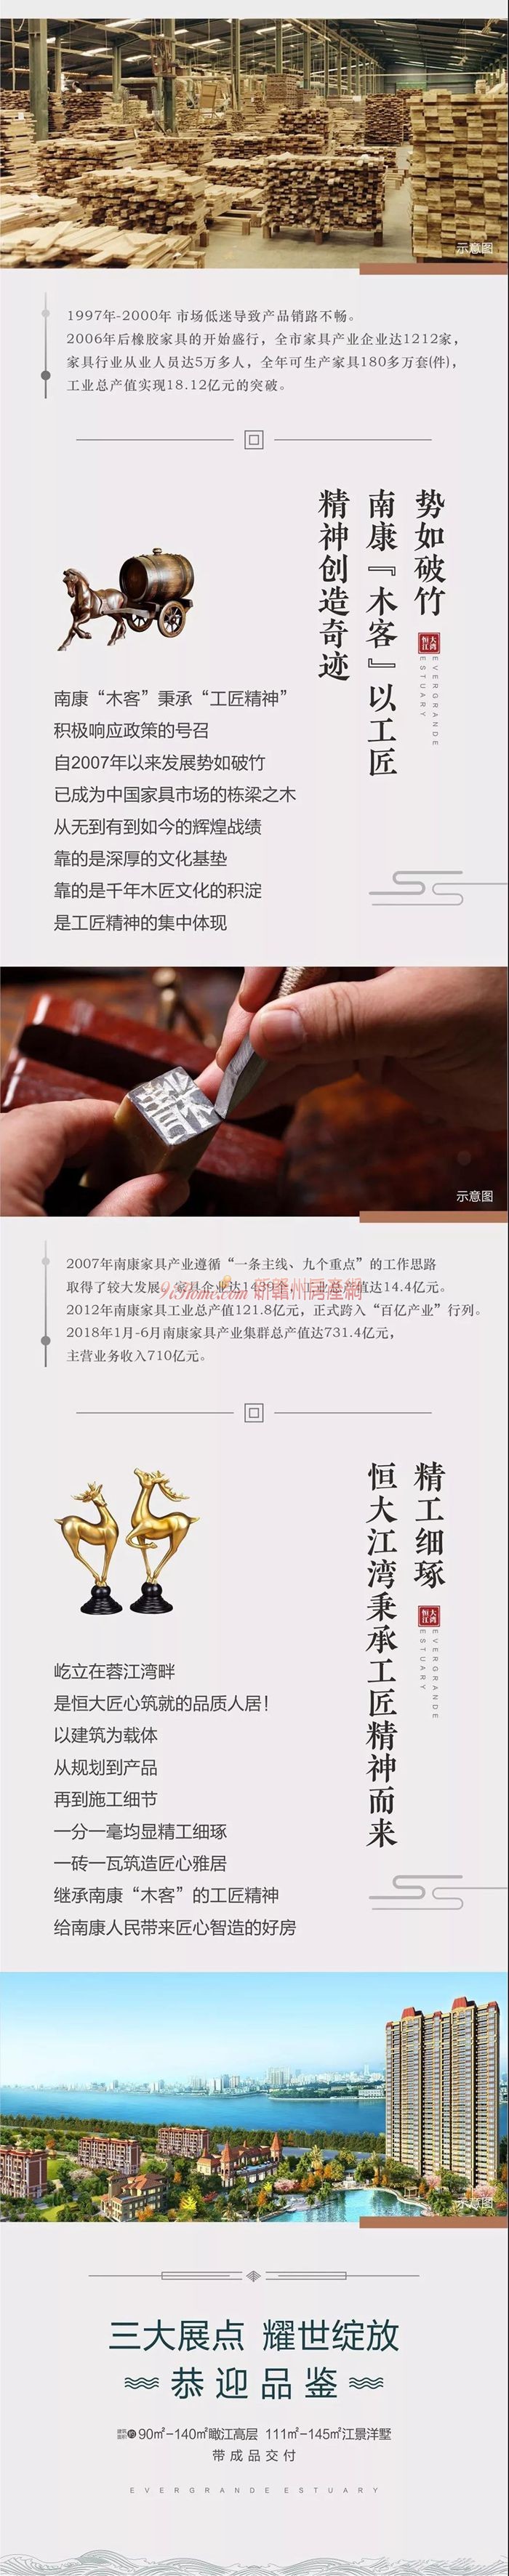 恒大江湾:千年传承 南康家具产业文化的匠心精神